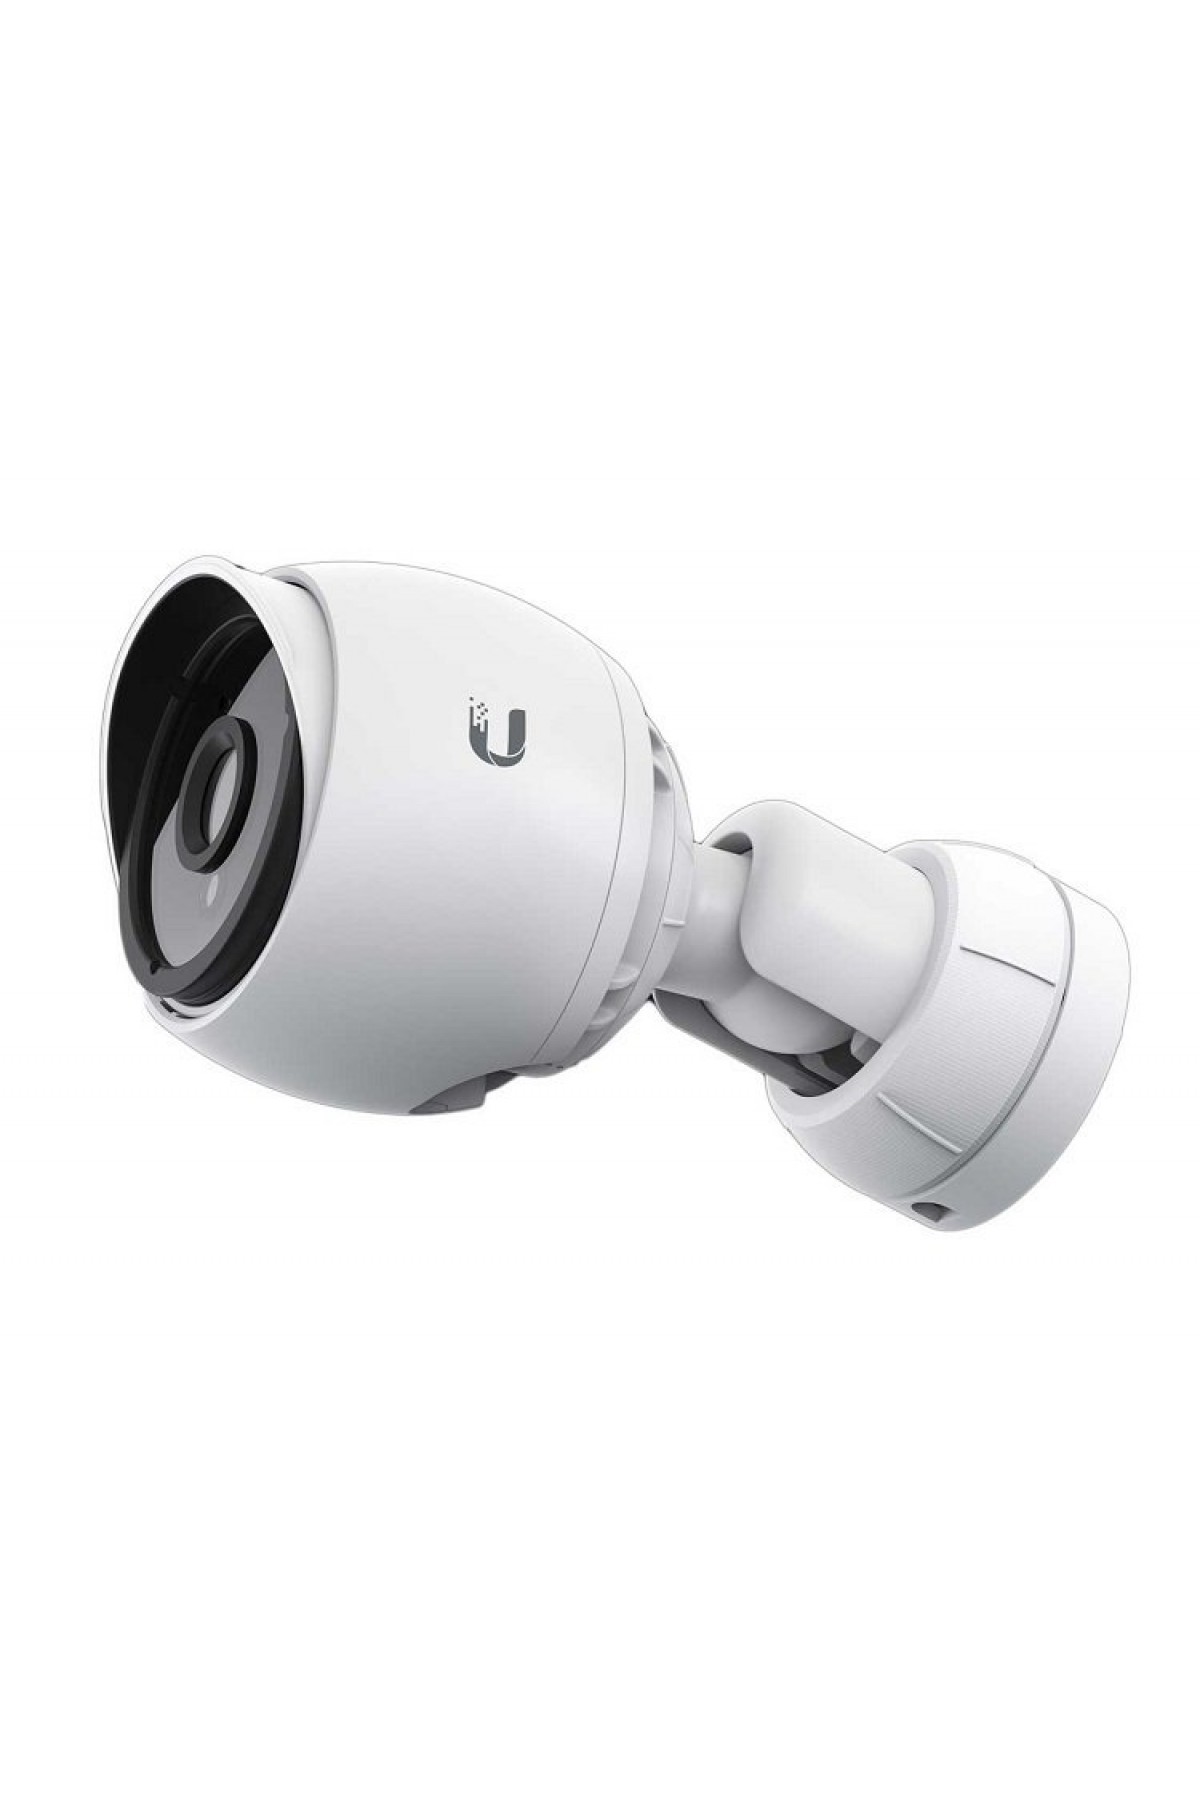 Ubiquiti UniFi Video Camera UVC-G3